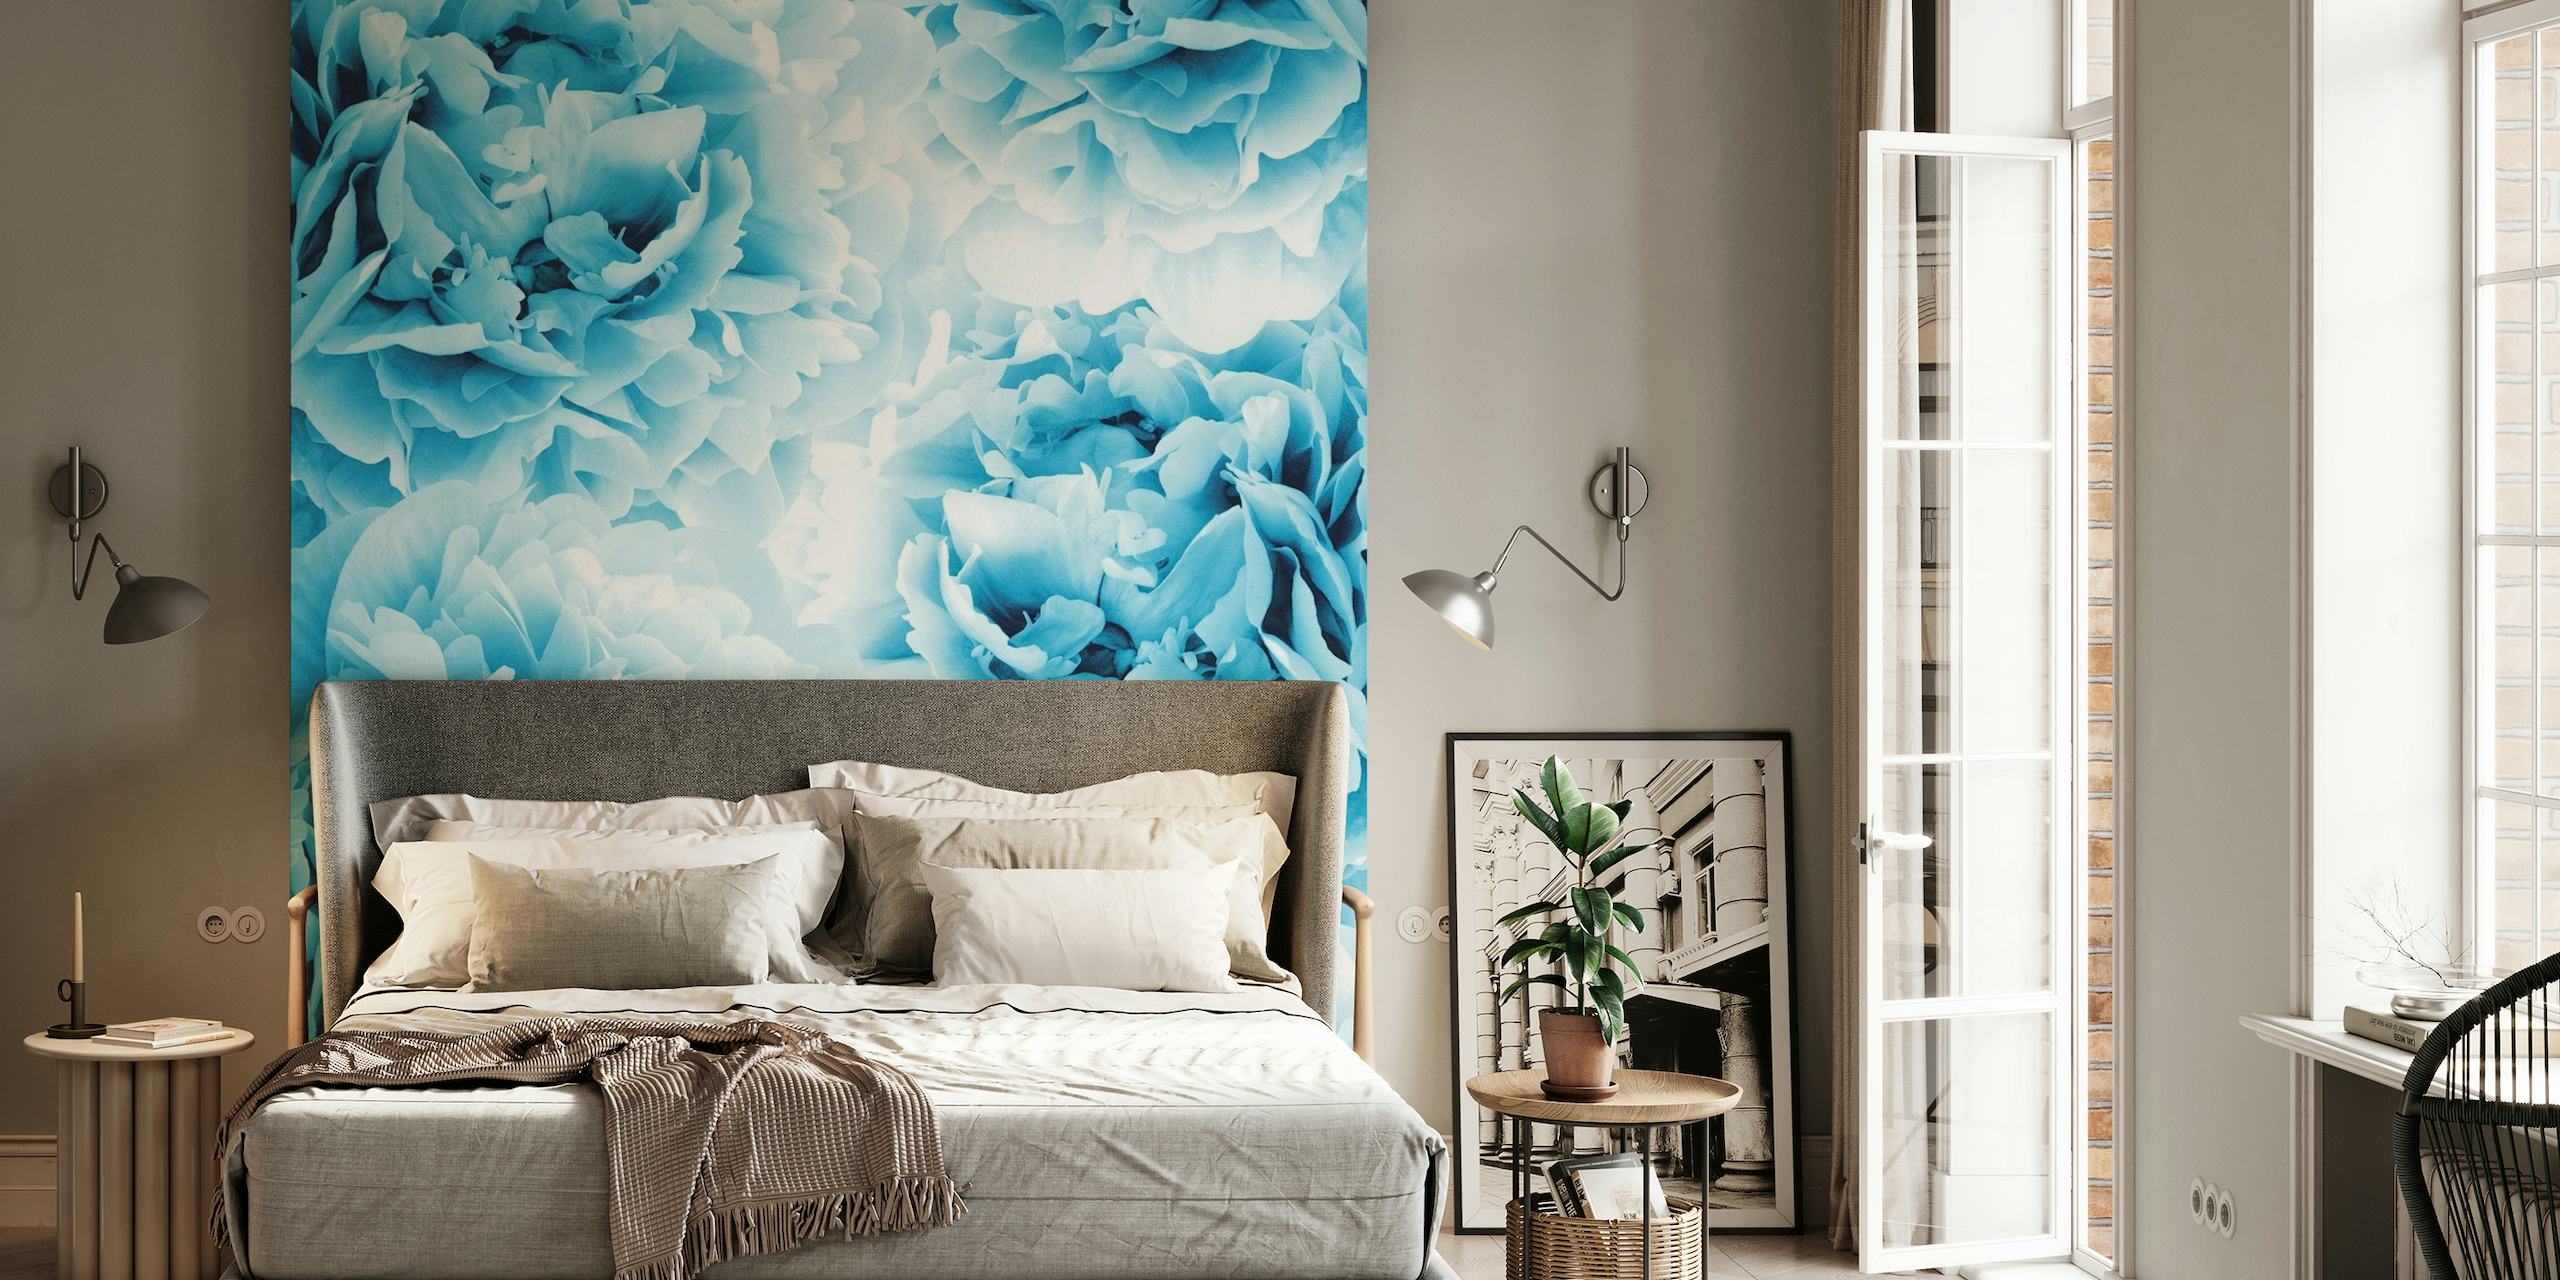 Papier peint mural élégant avec des pivoines bleues pour une atmosphère sereine